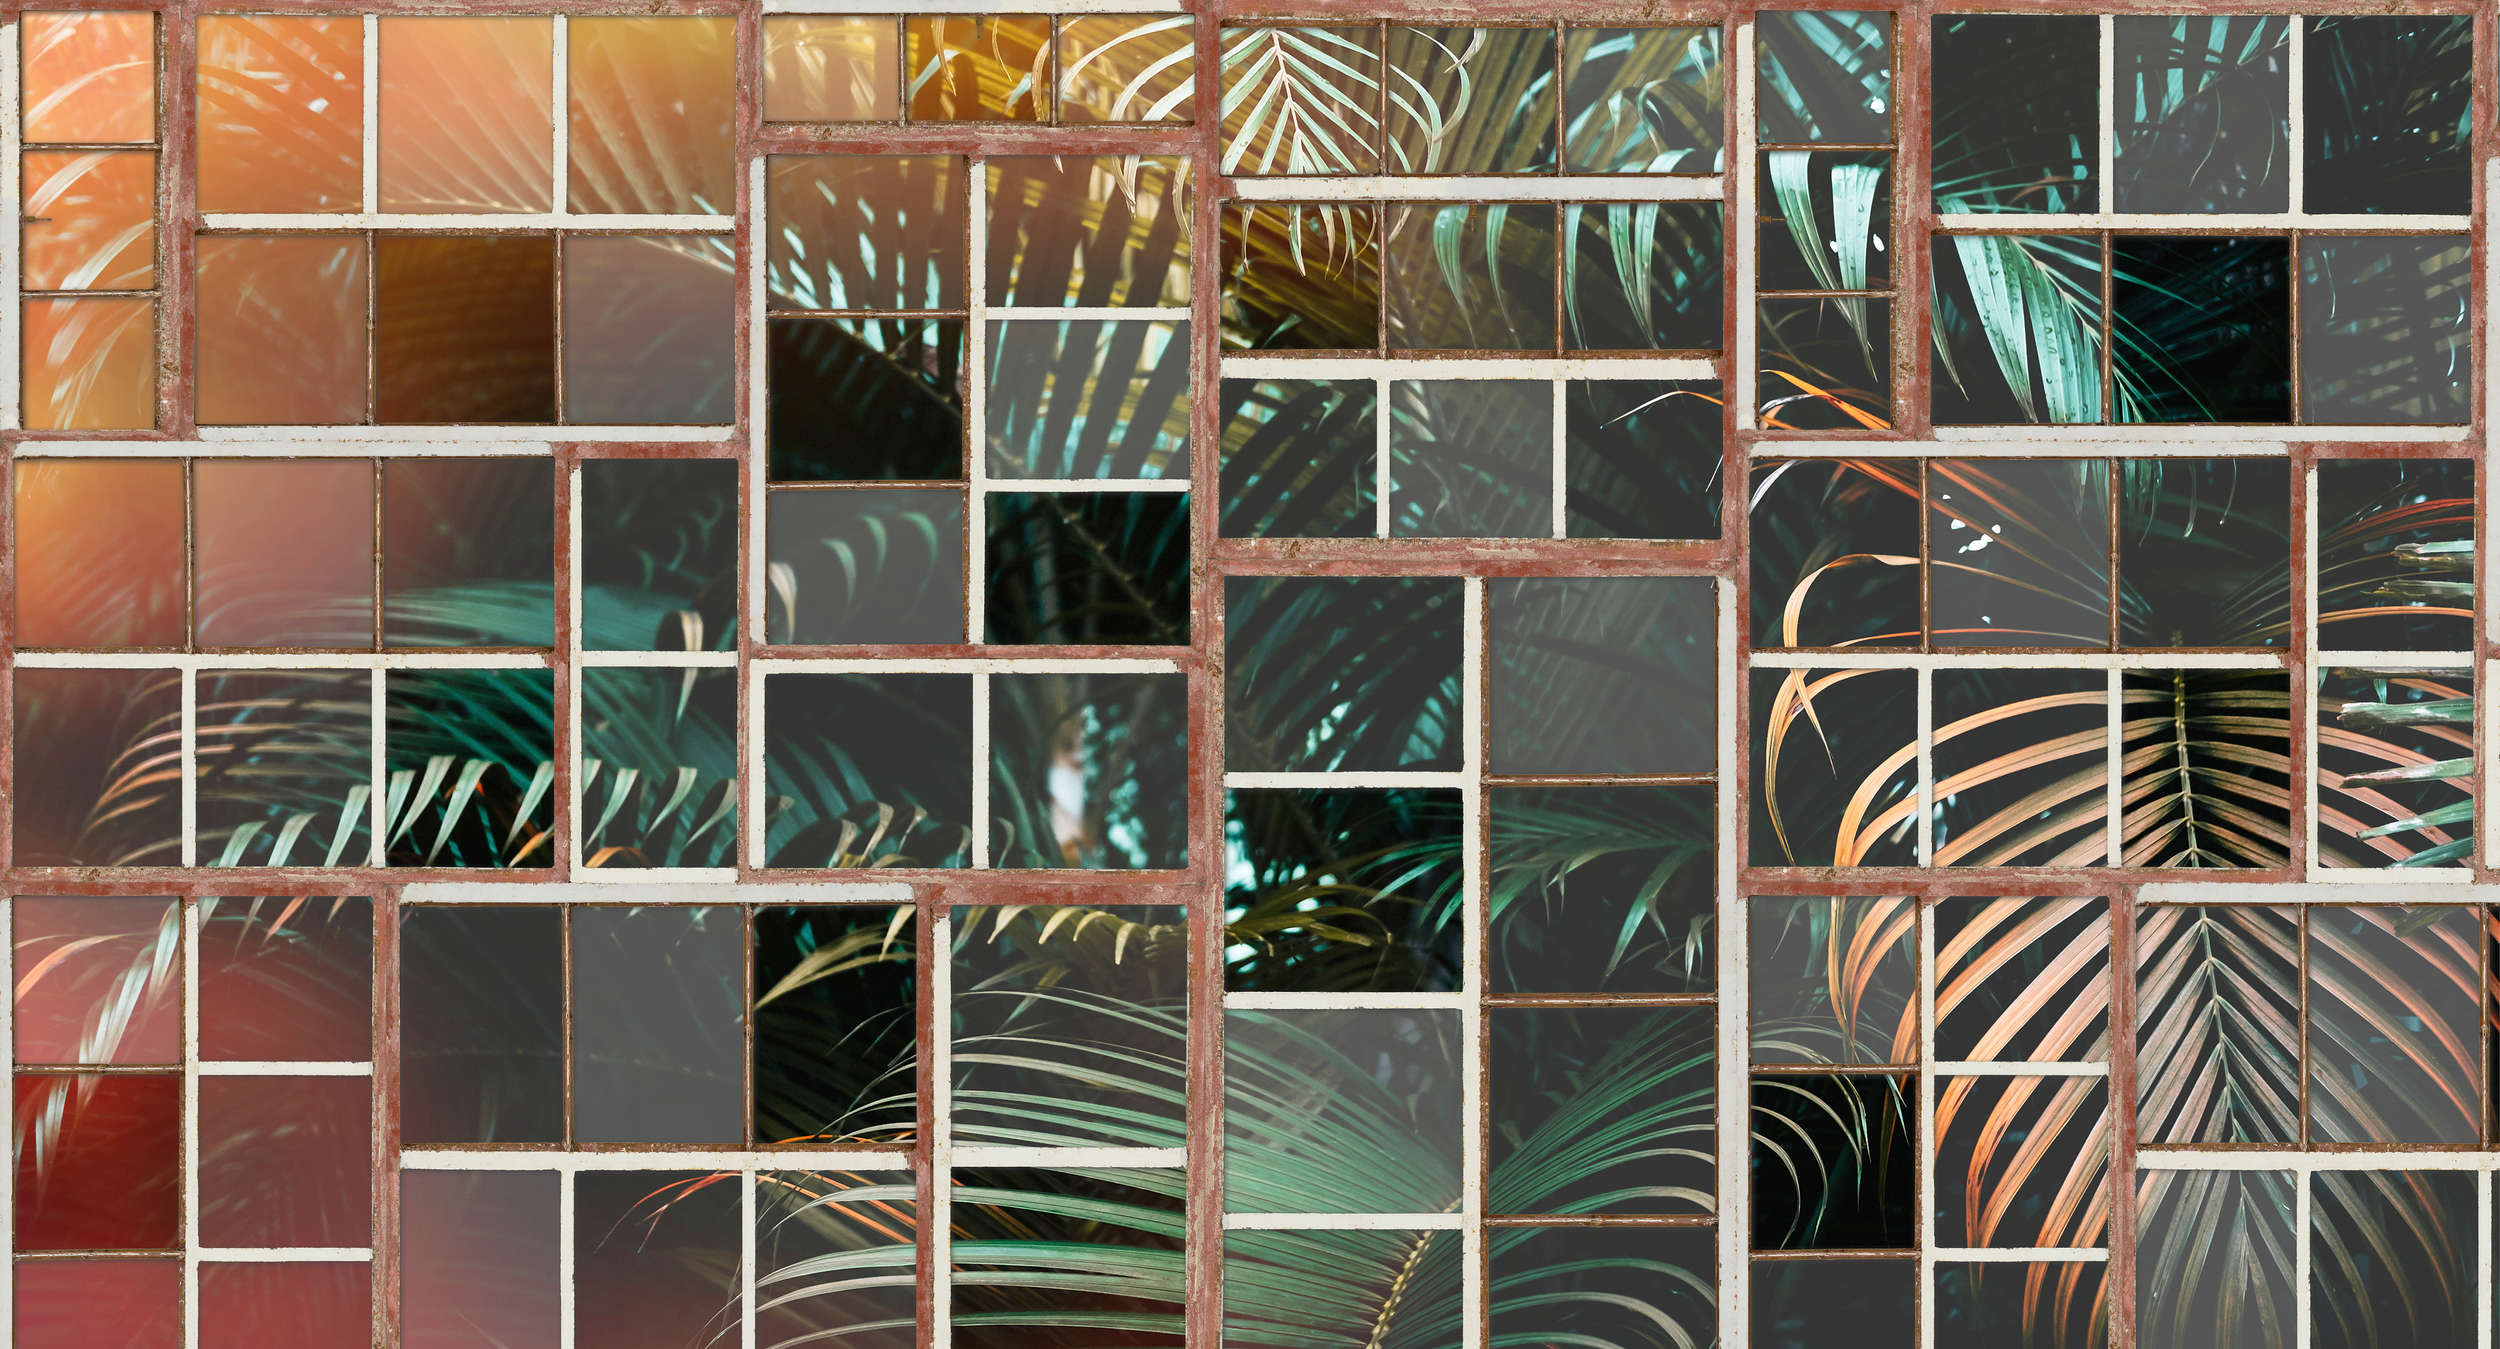             Muurschildering met uitzicht, retro raam & varens - bruin, wit, groen
        